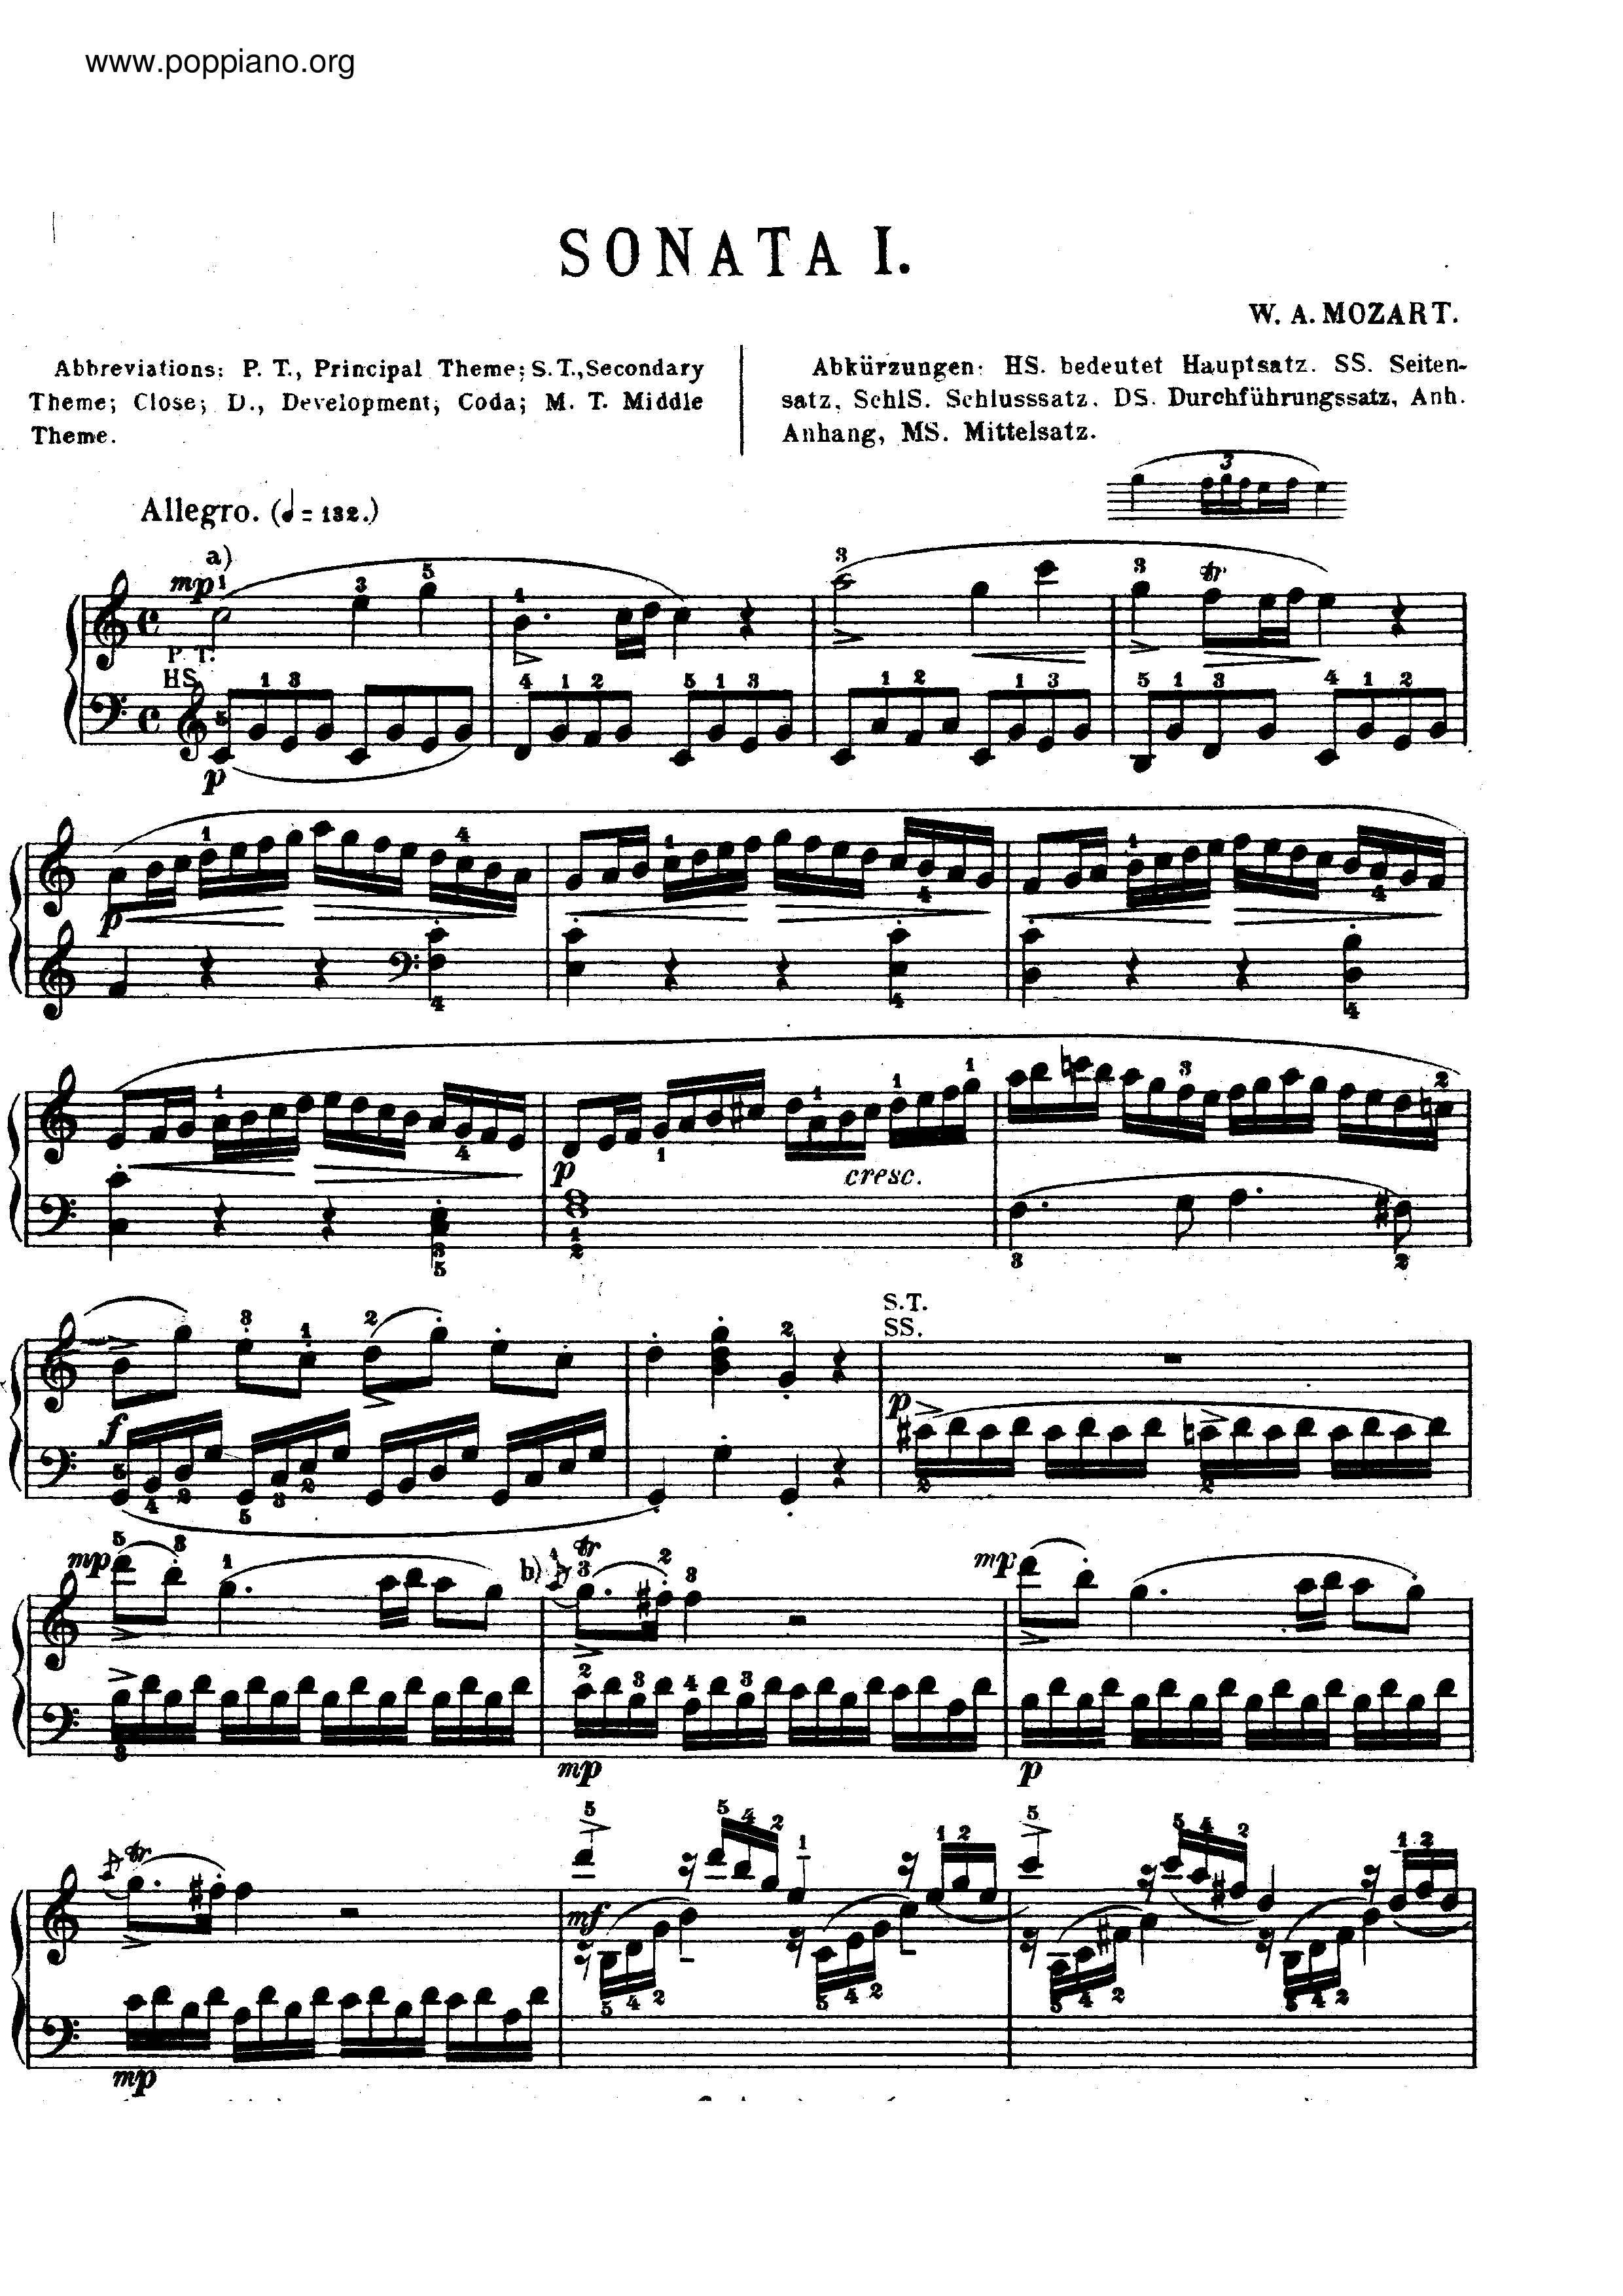 Piano Sonata No. 16 K. 545 All Movement Score